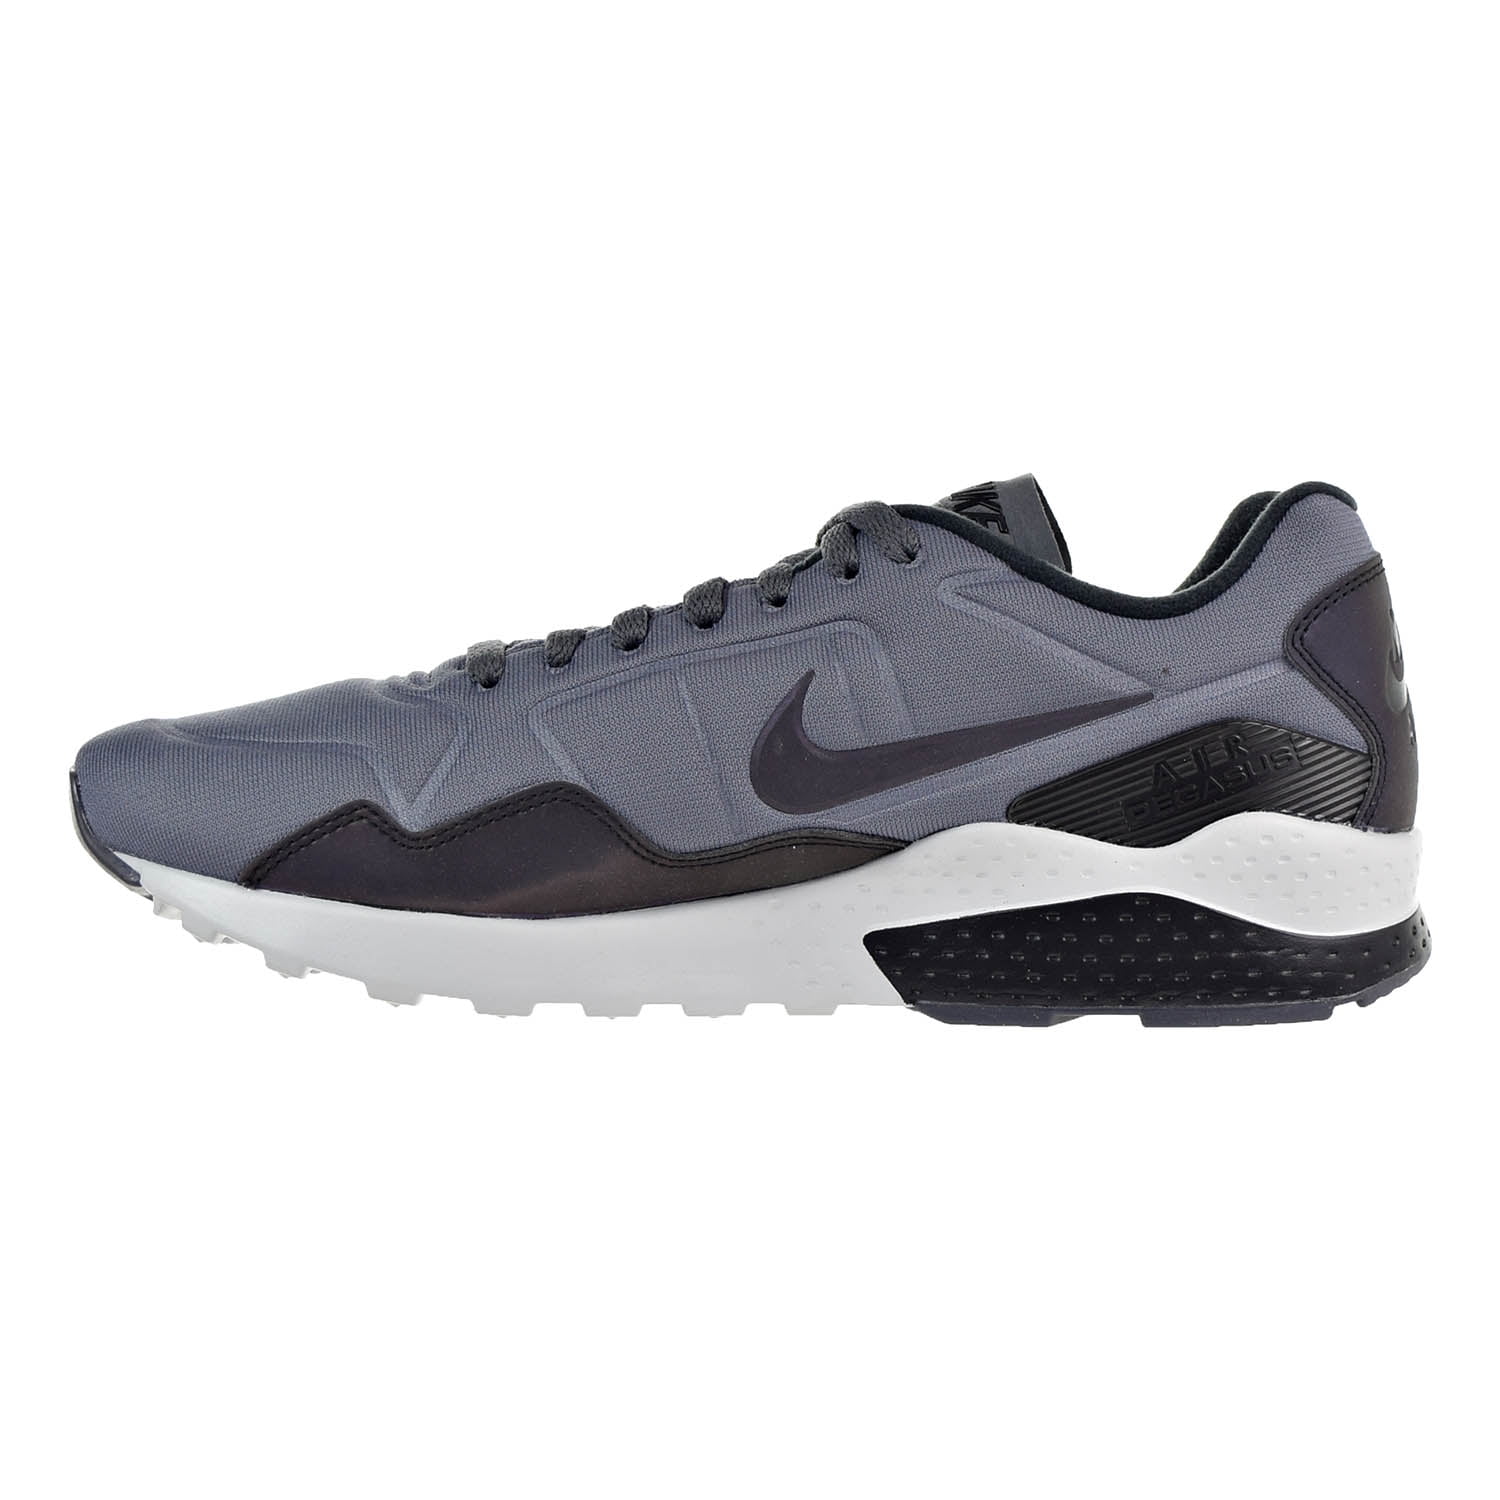 Nike Air Pegasus 92 Premium Men's Dark Grey/Black/Pure Platinum 844654-004 - Walmart.com